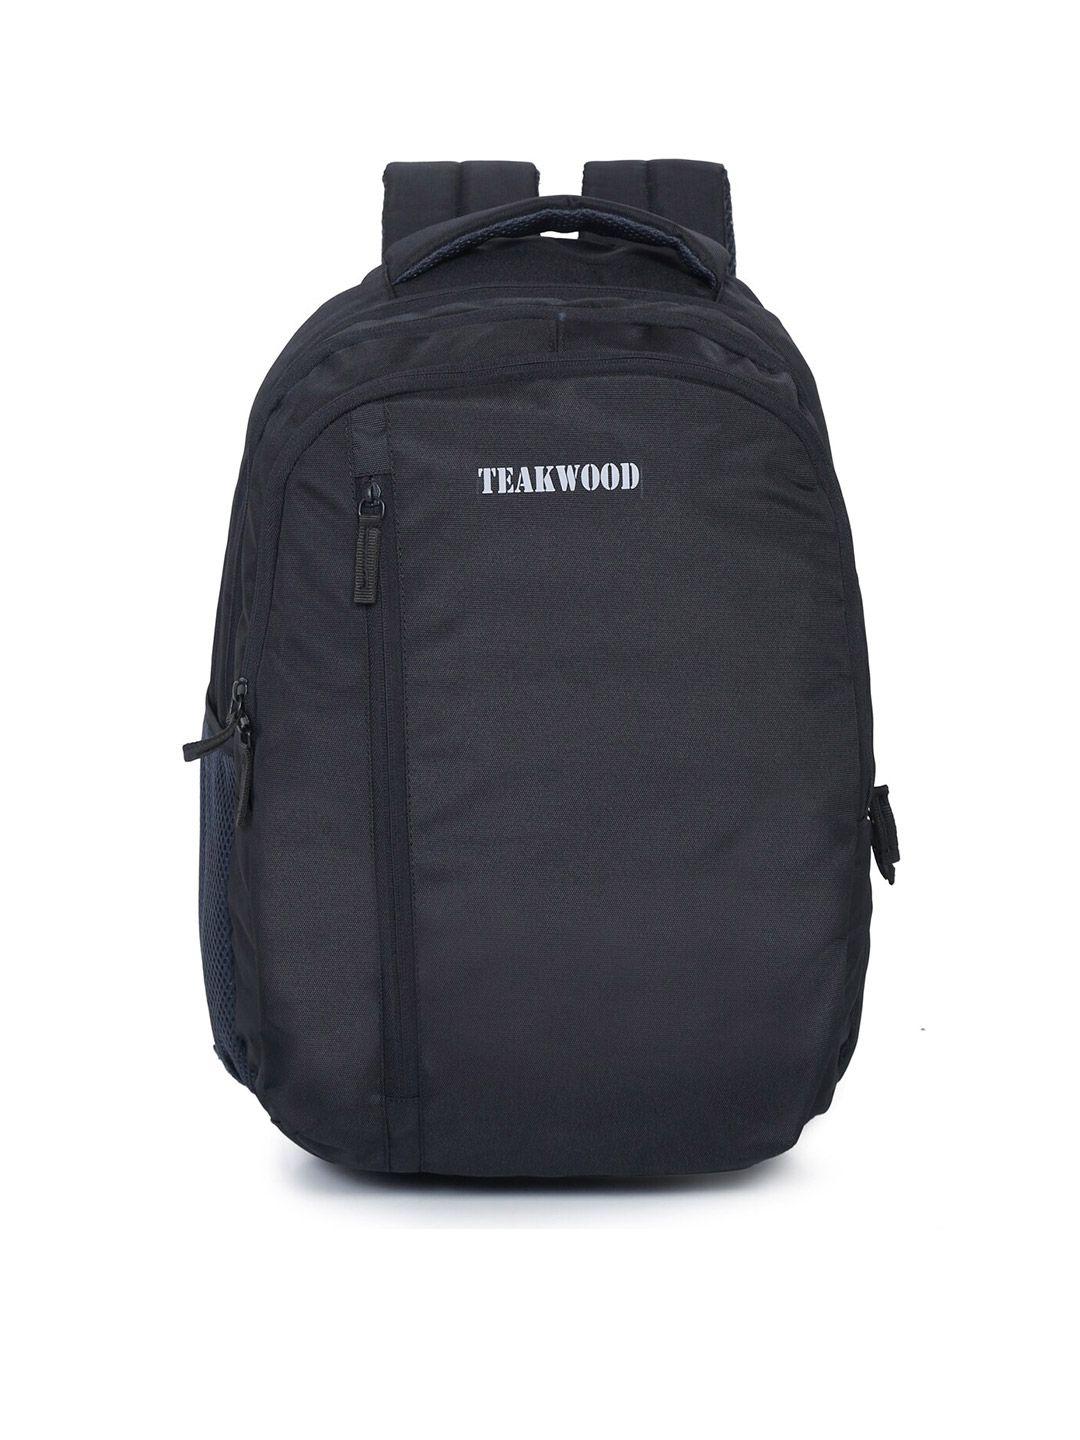 teakwood leathers unisex black casual backpack